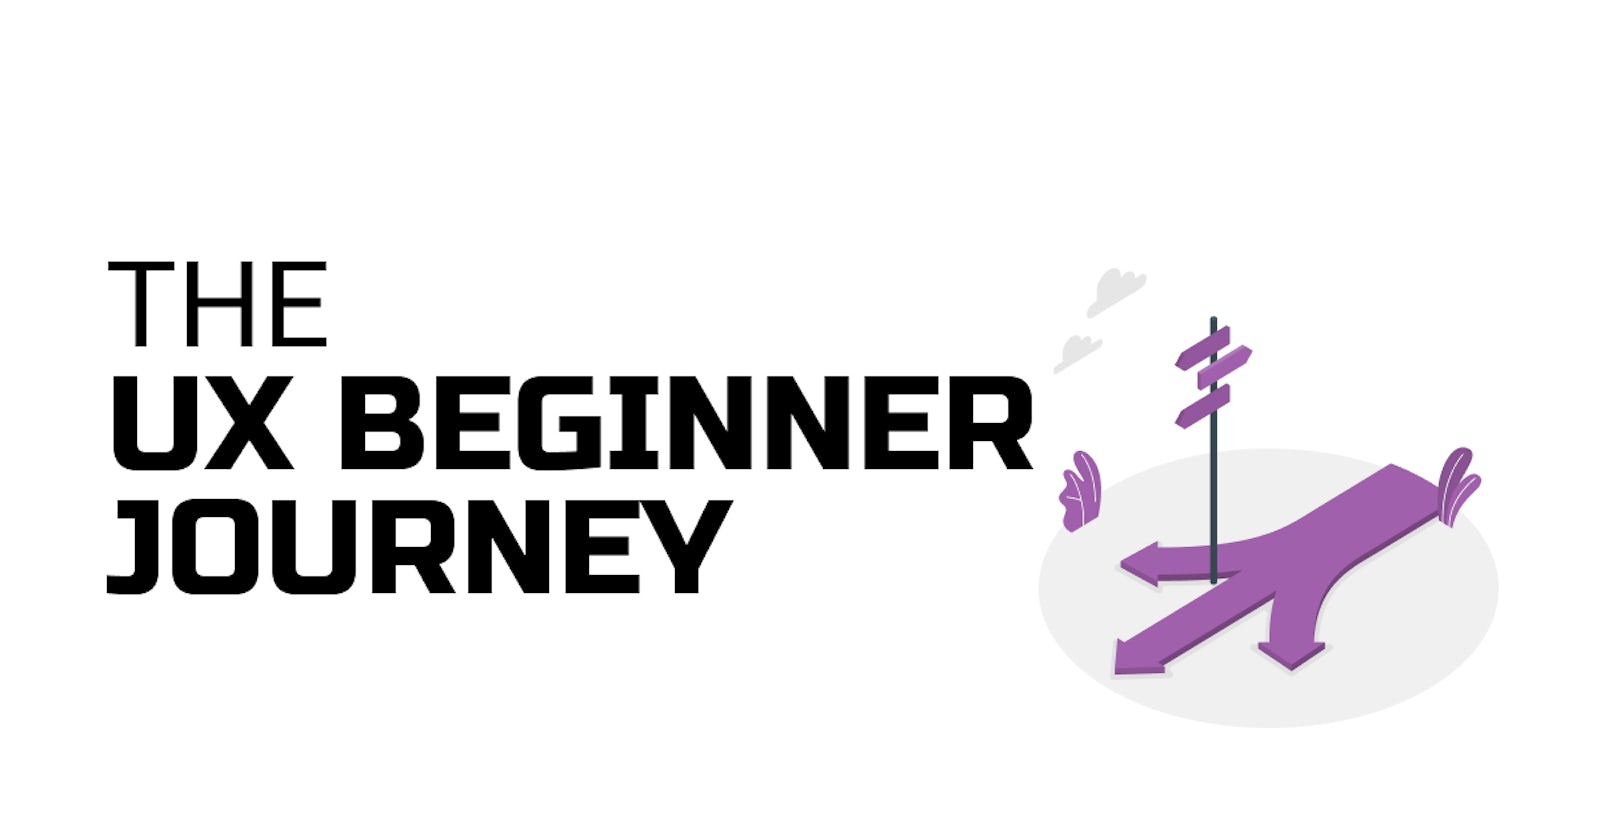 The UX Beginner's Journey